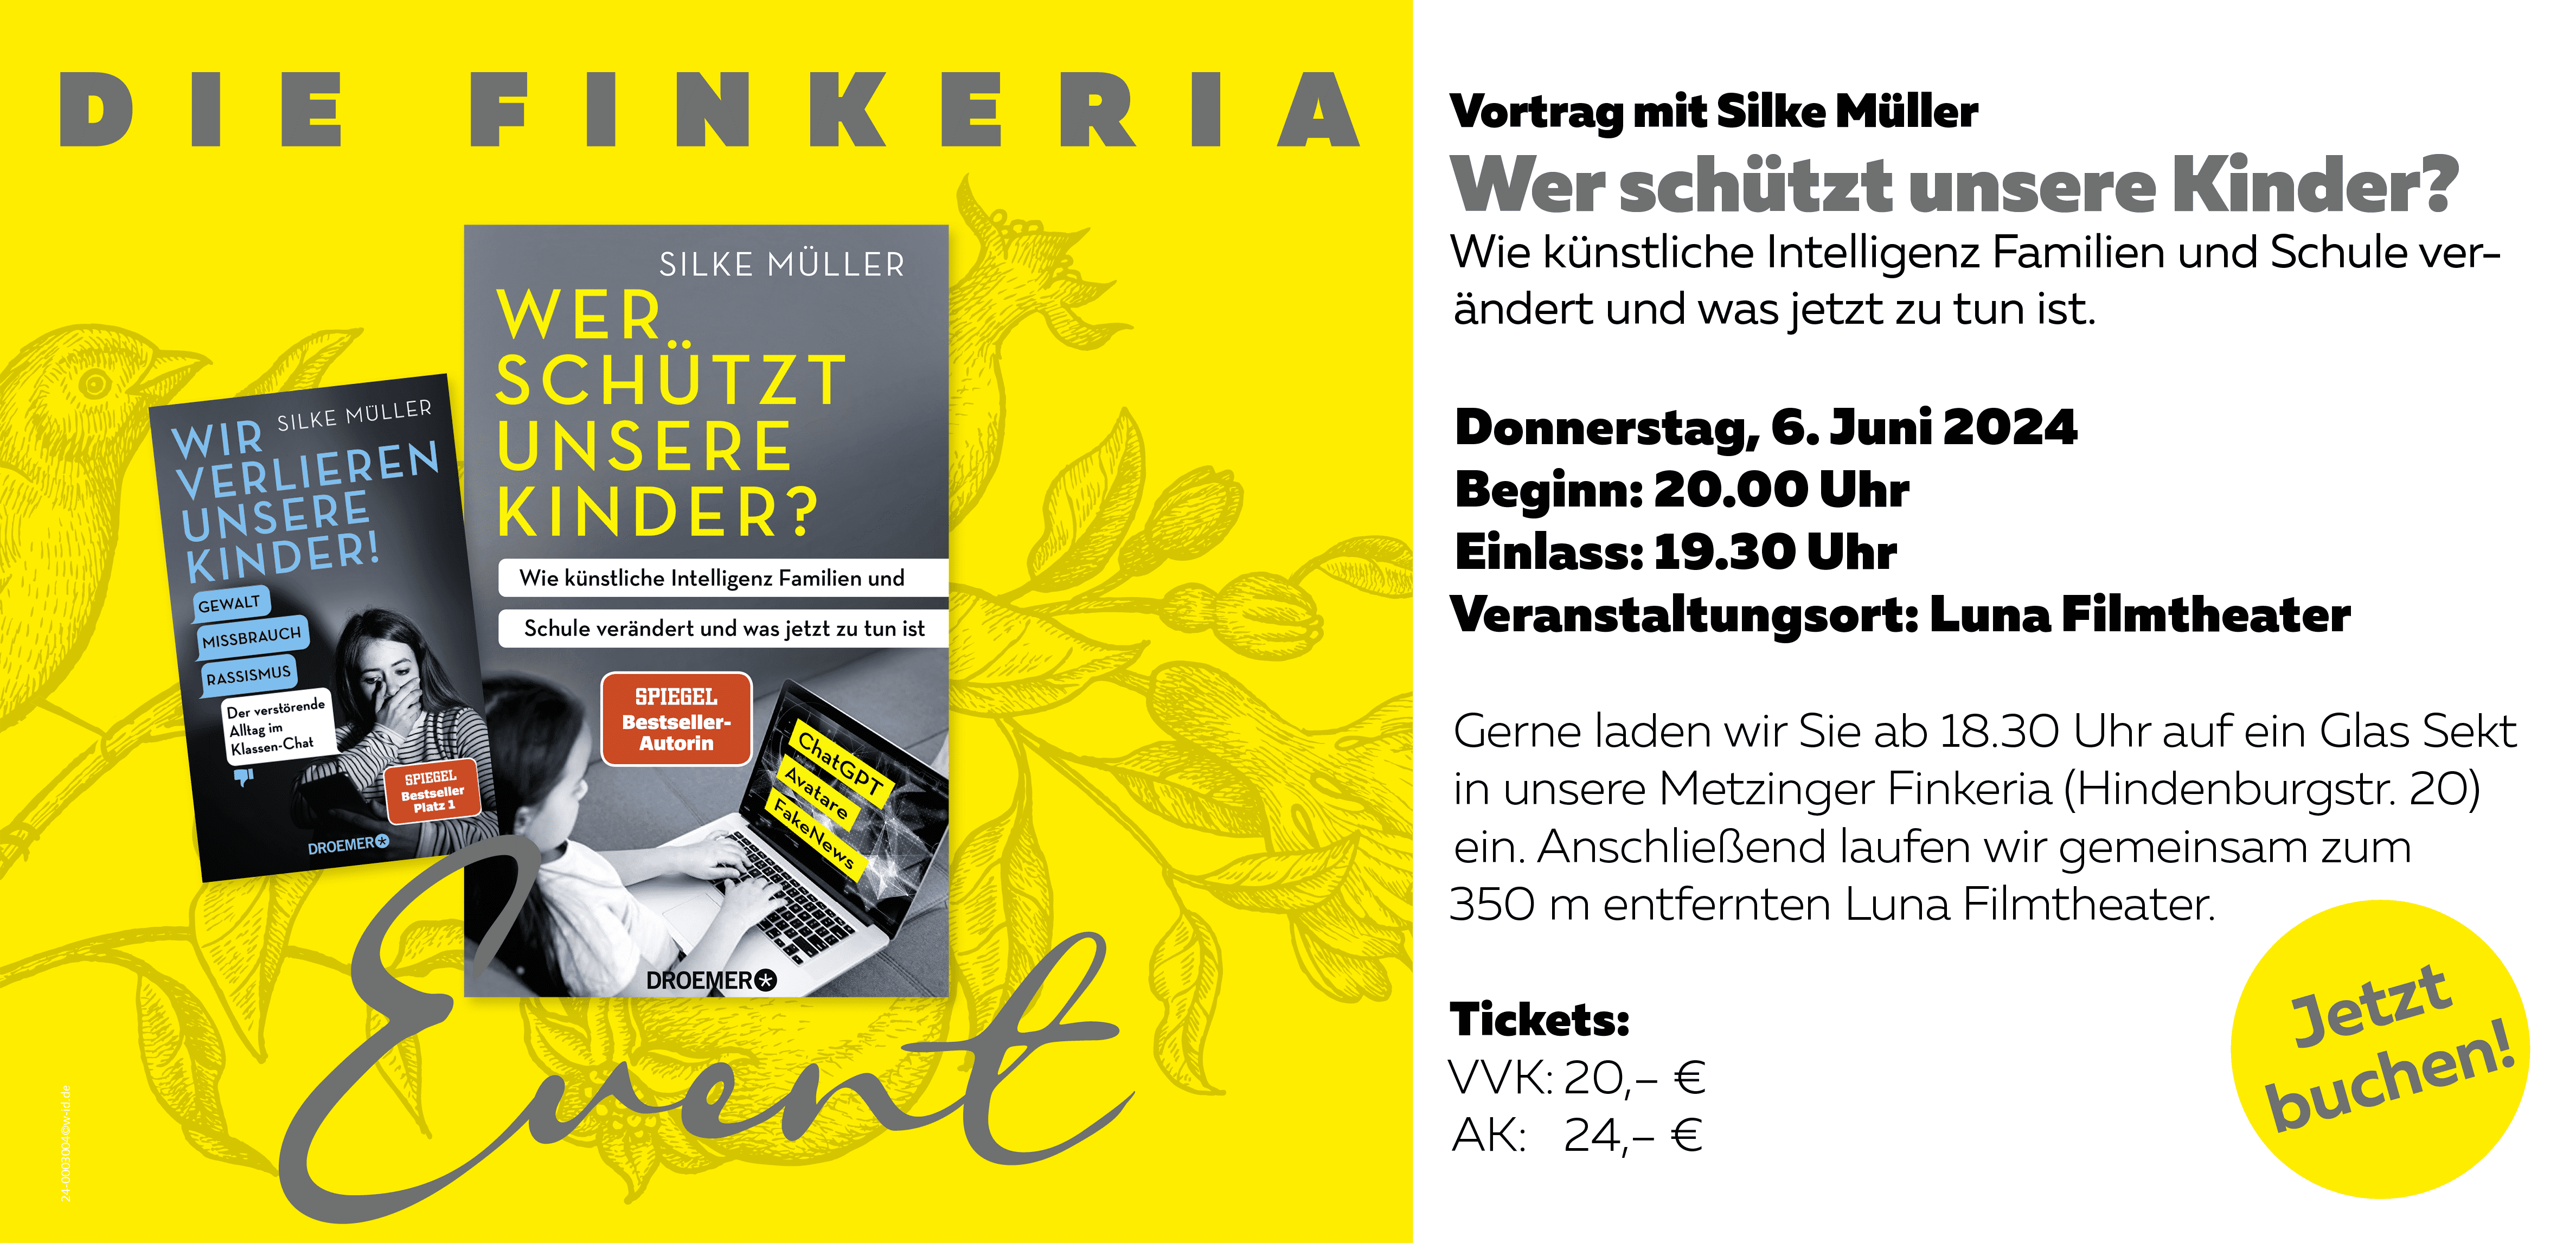 Ticket Vortrag Silke Müller: Wer schützt unsere Kinder?